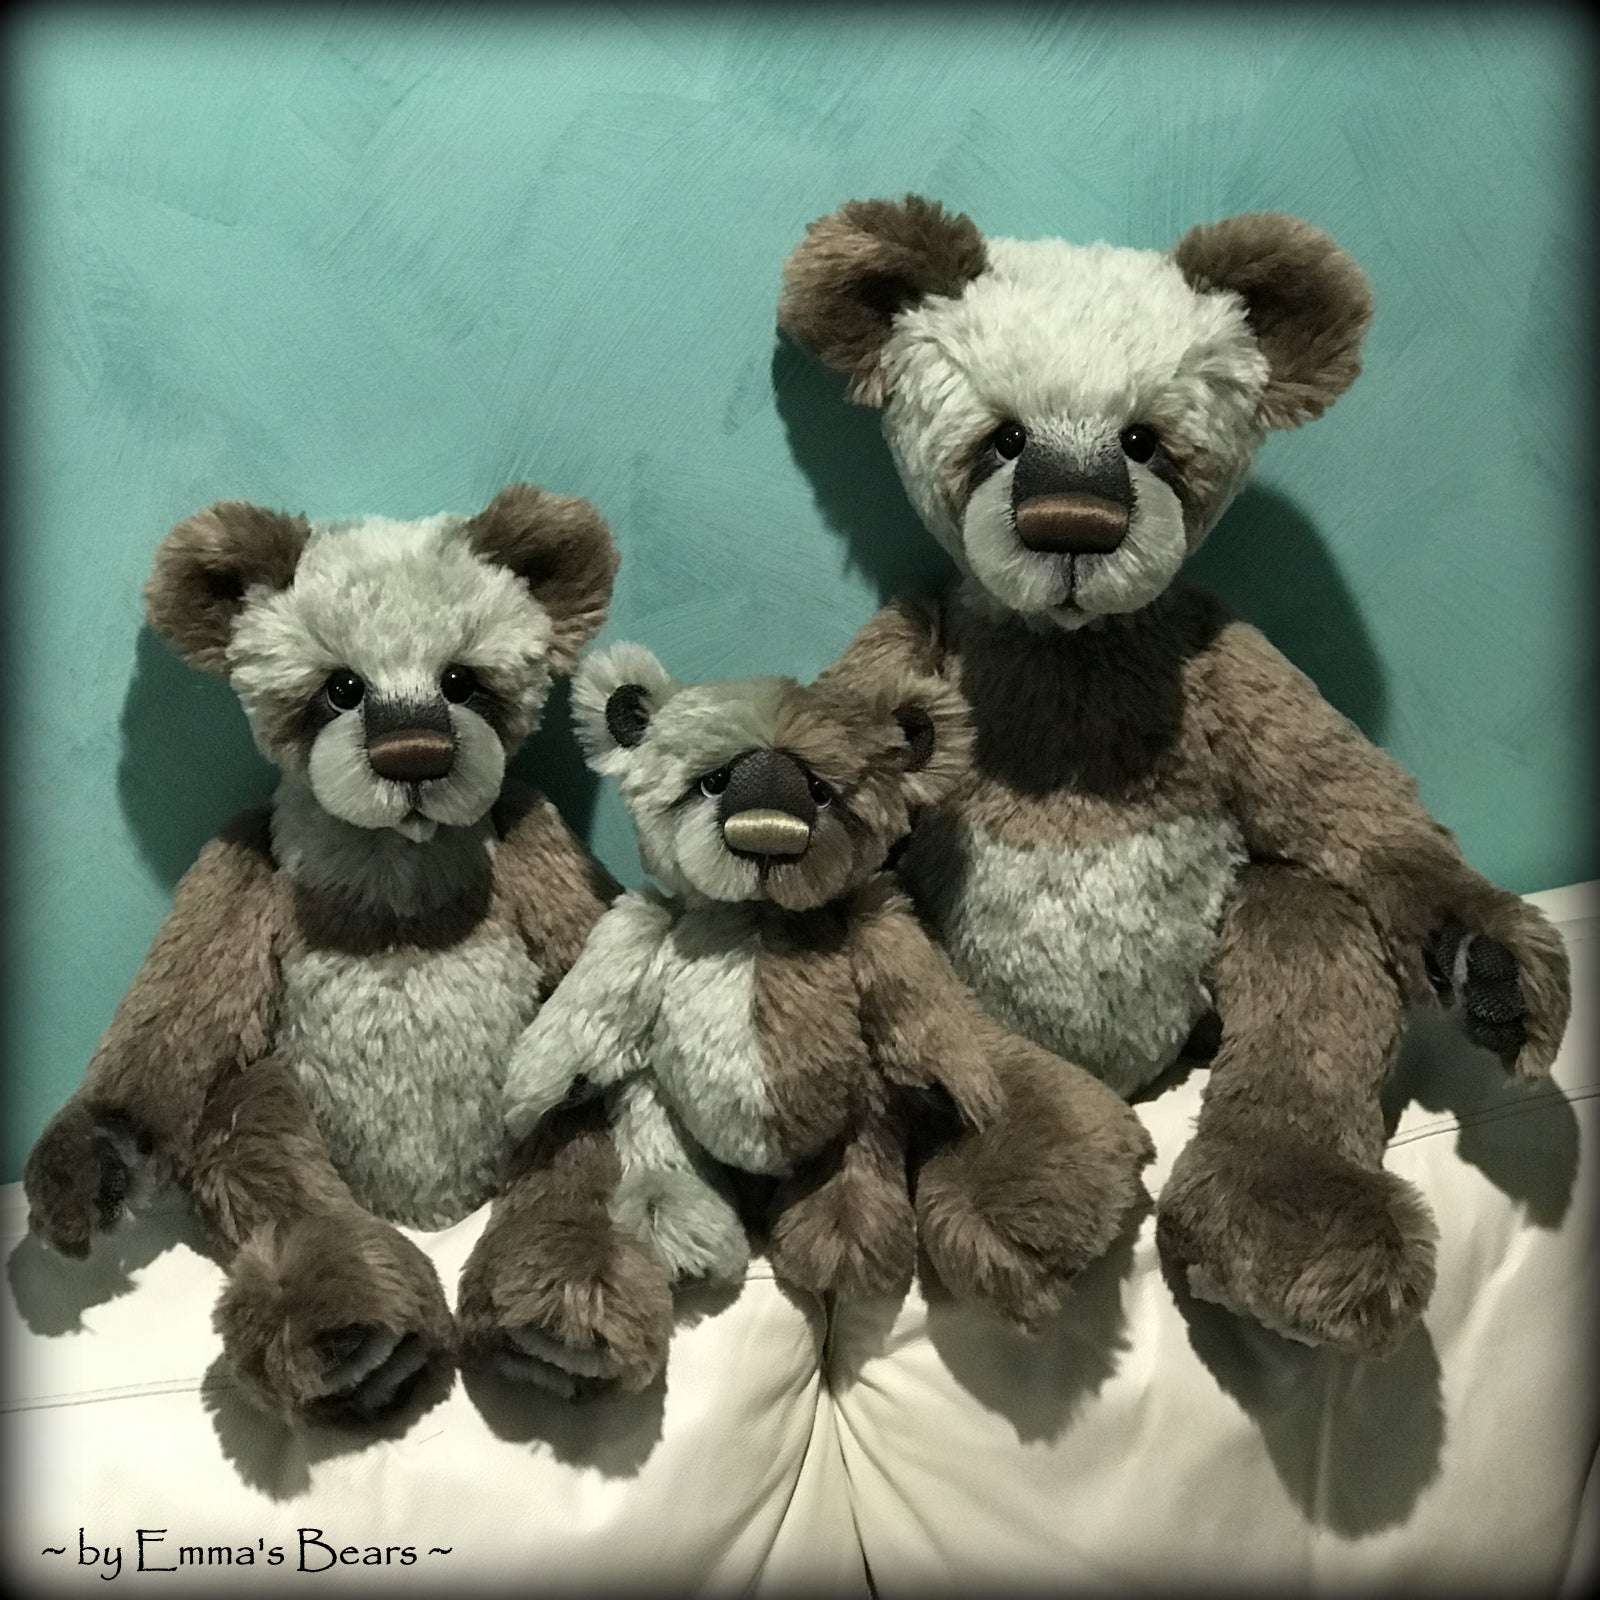 Caspian - 11" Mohair artist bear by Emma's Bears - OOAK